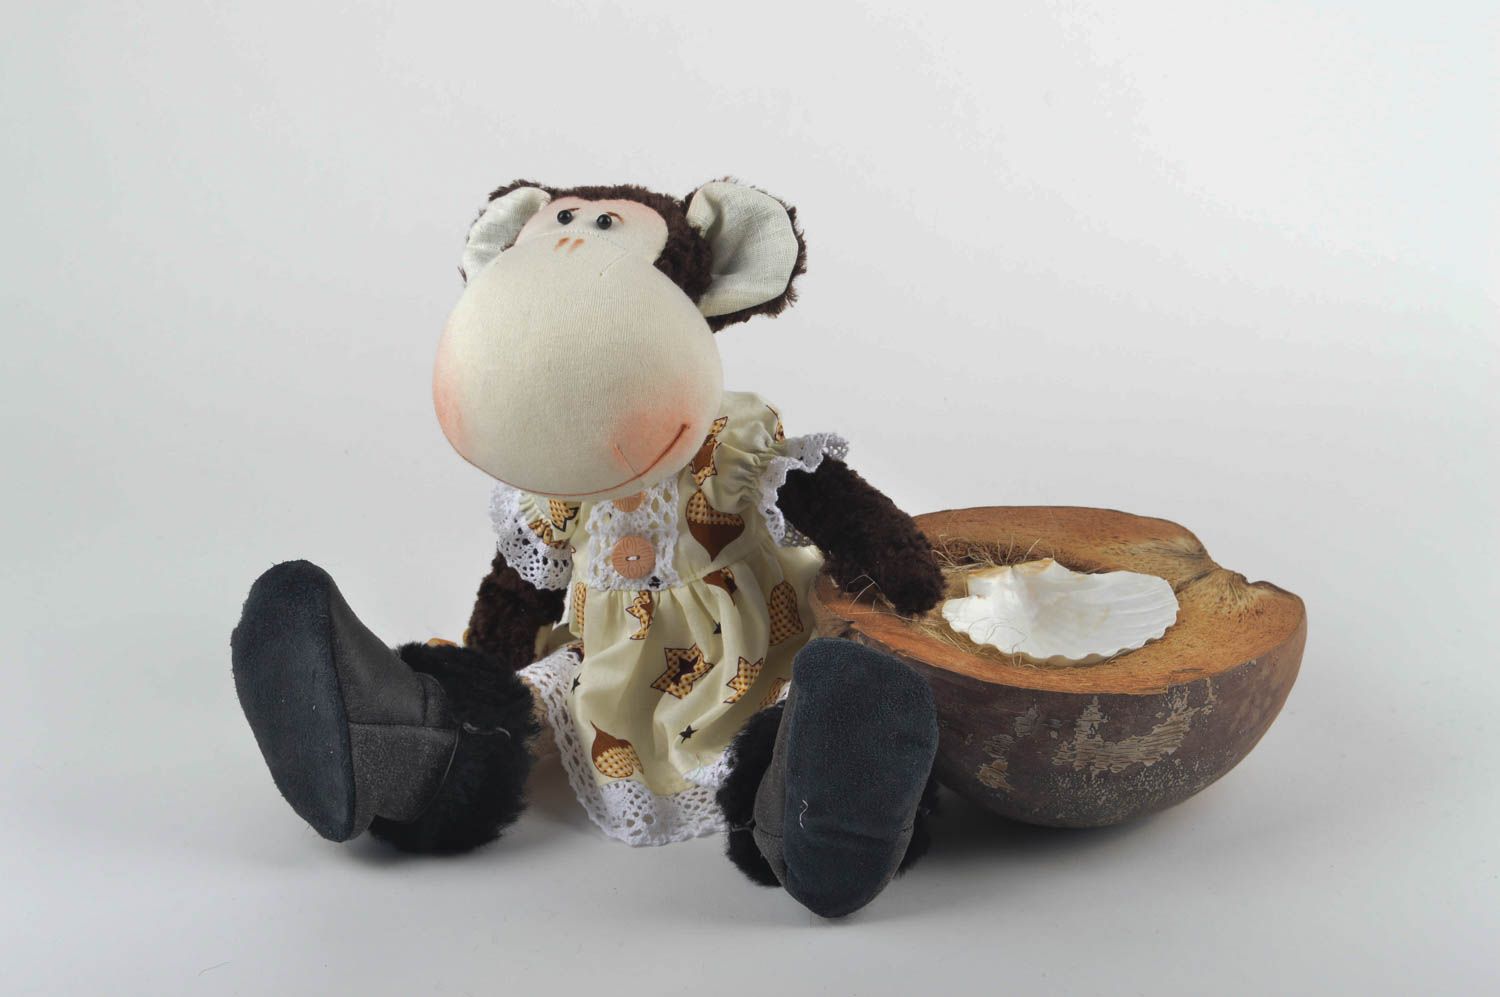 Игрушка обезьяна хэнд мэйд детская игрушка из льна мягкая игрушка необычная фото 1